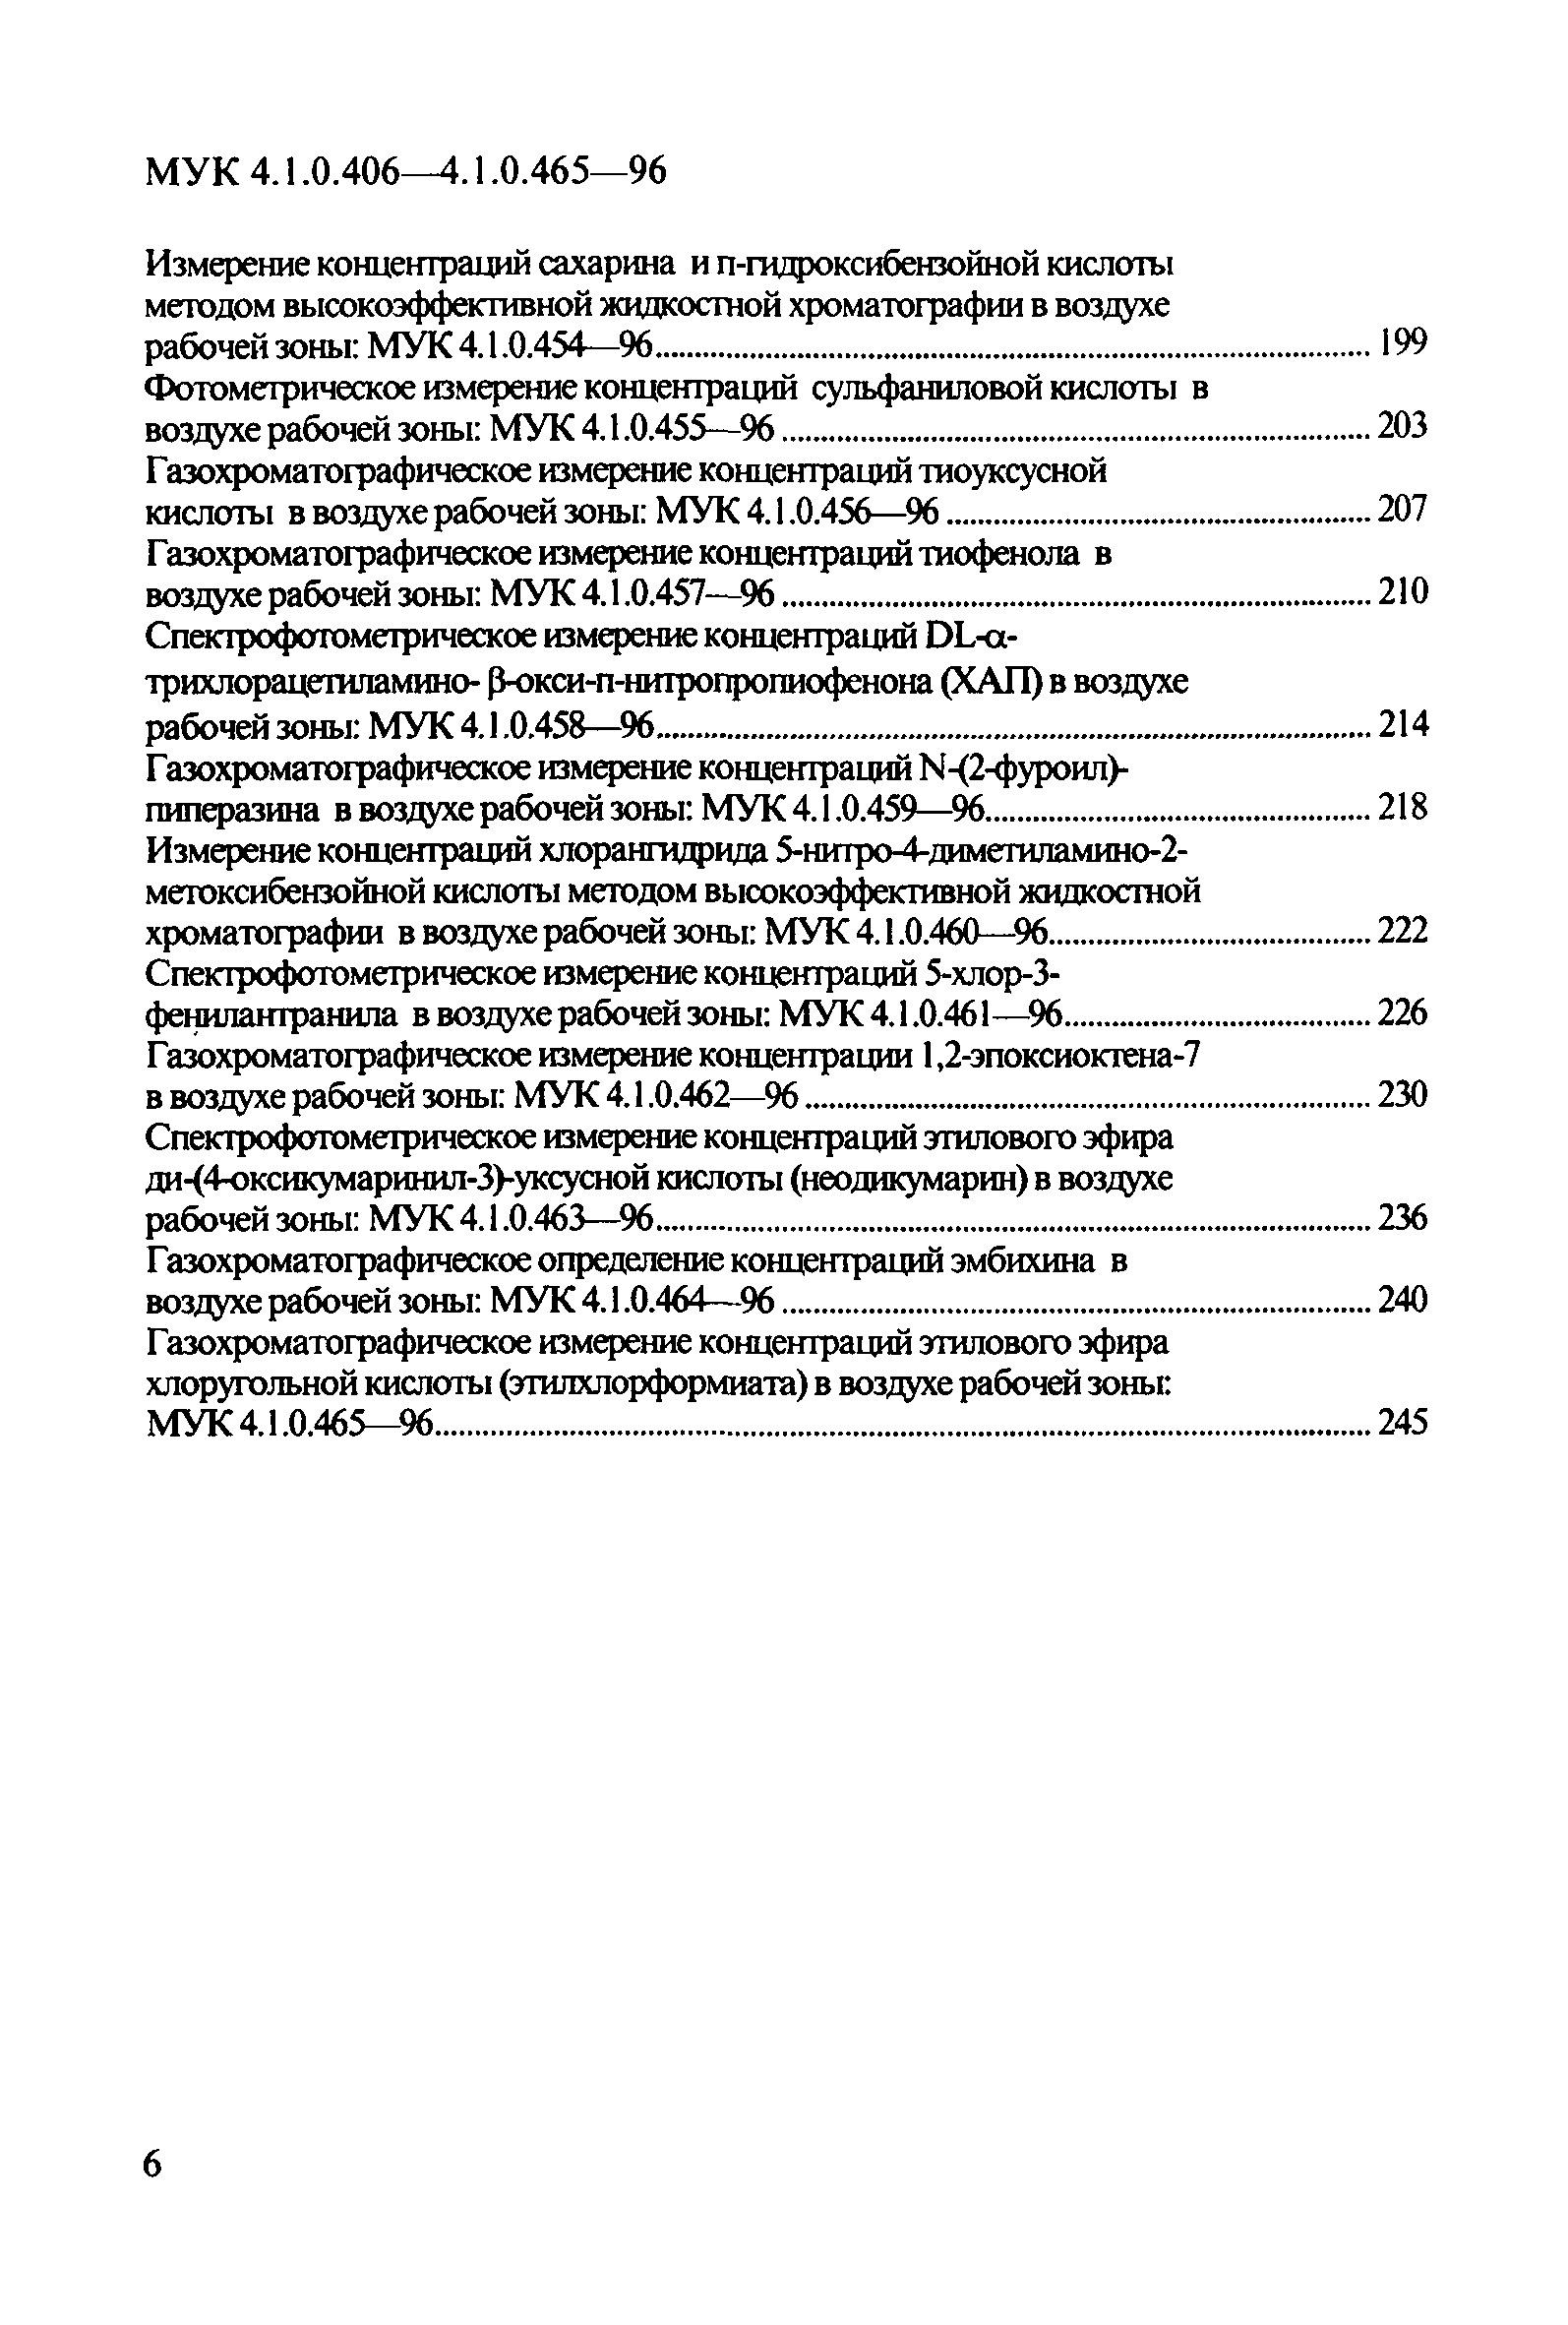 МУК 4.1.0.419-96